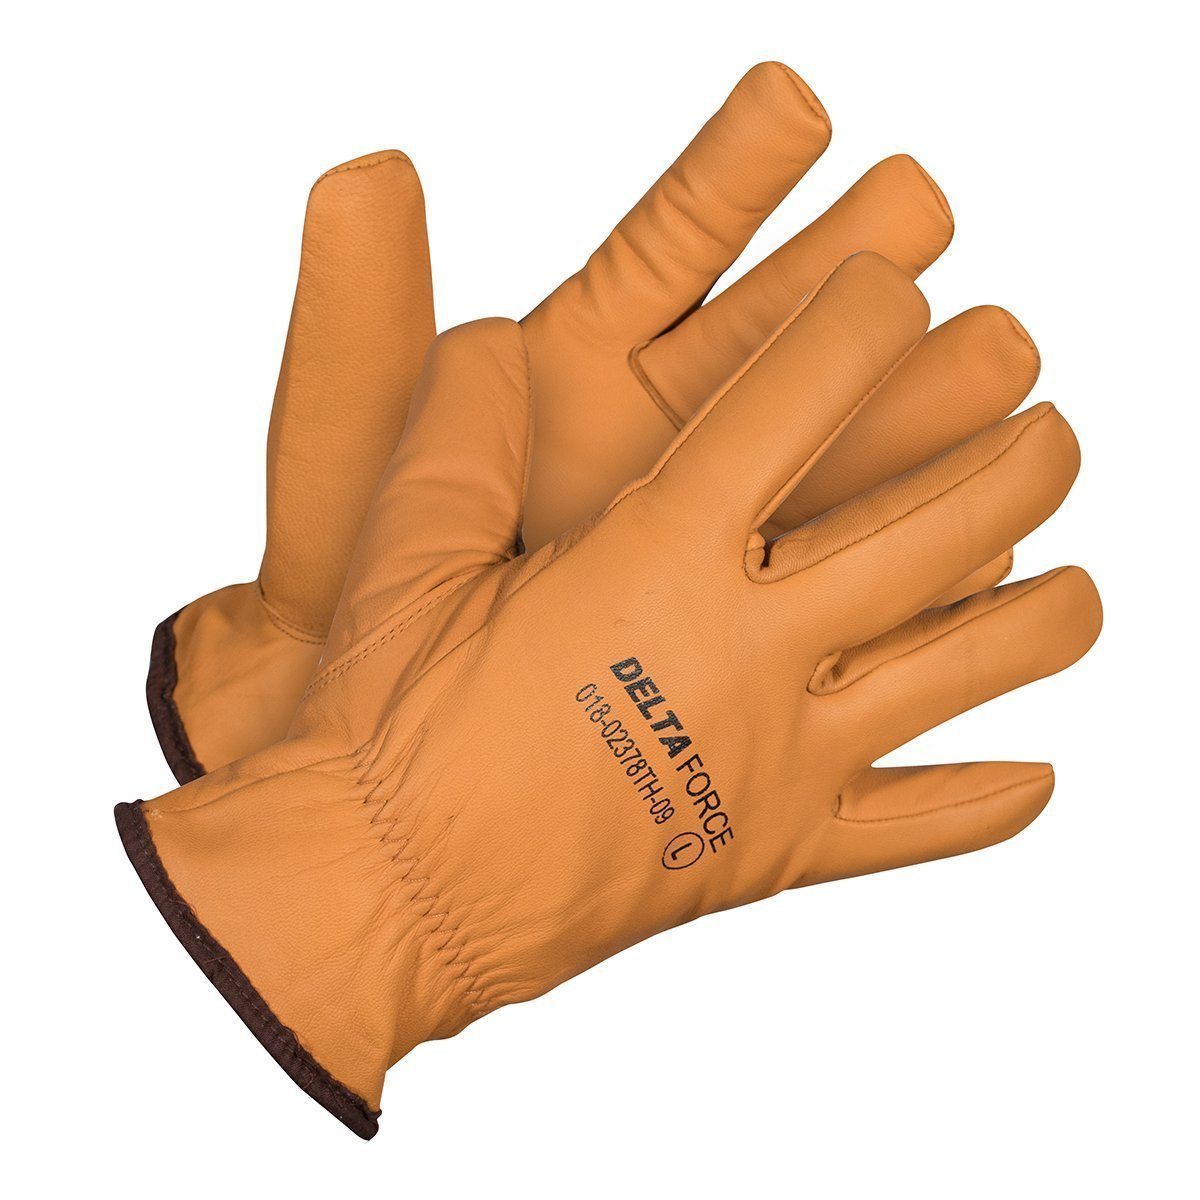 https://www.forcefieldcanada.com/cdn/shop/products/delta-force-winter-wateroil-resistant-goatskin-grain-leather-gloves_1800x1800.jpg?v=1707336948